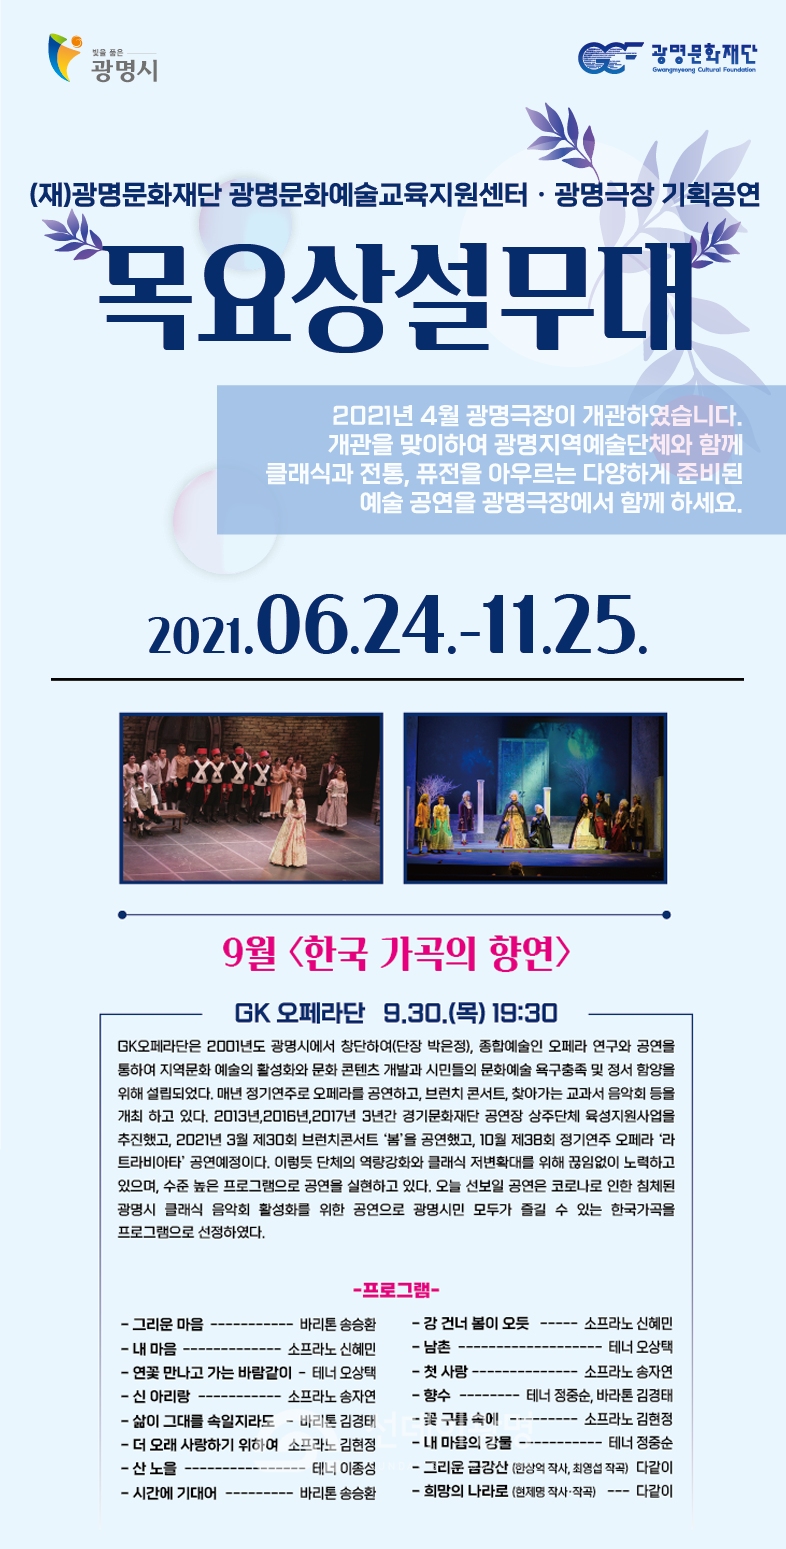 광명문화재단 광명극장 기획공연 목요상설무대 ‘한국 가곡의 향연’개최!